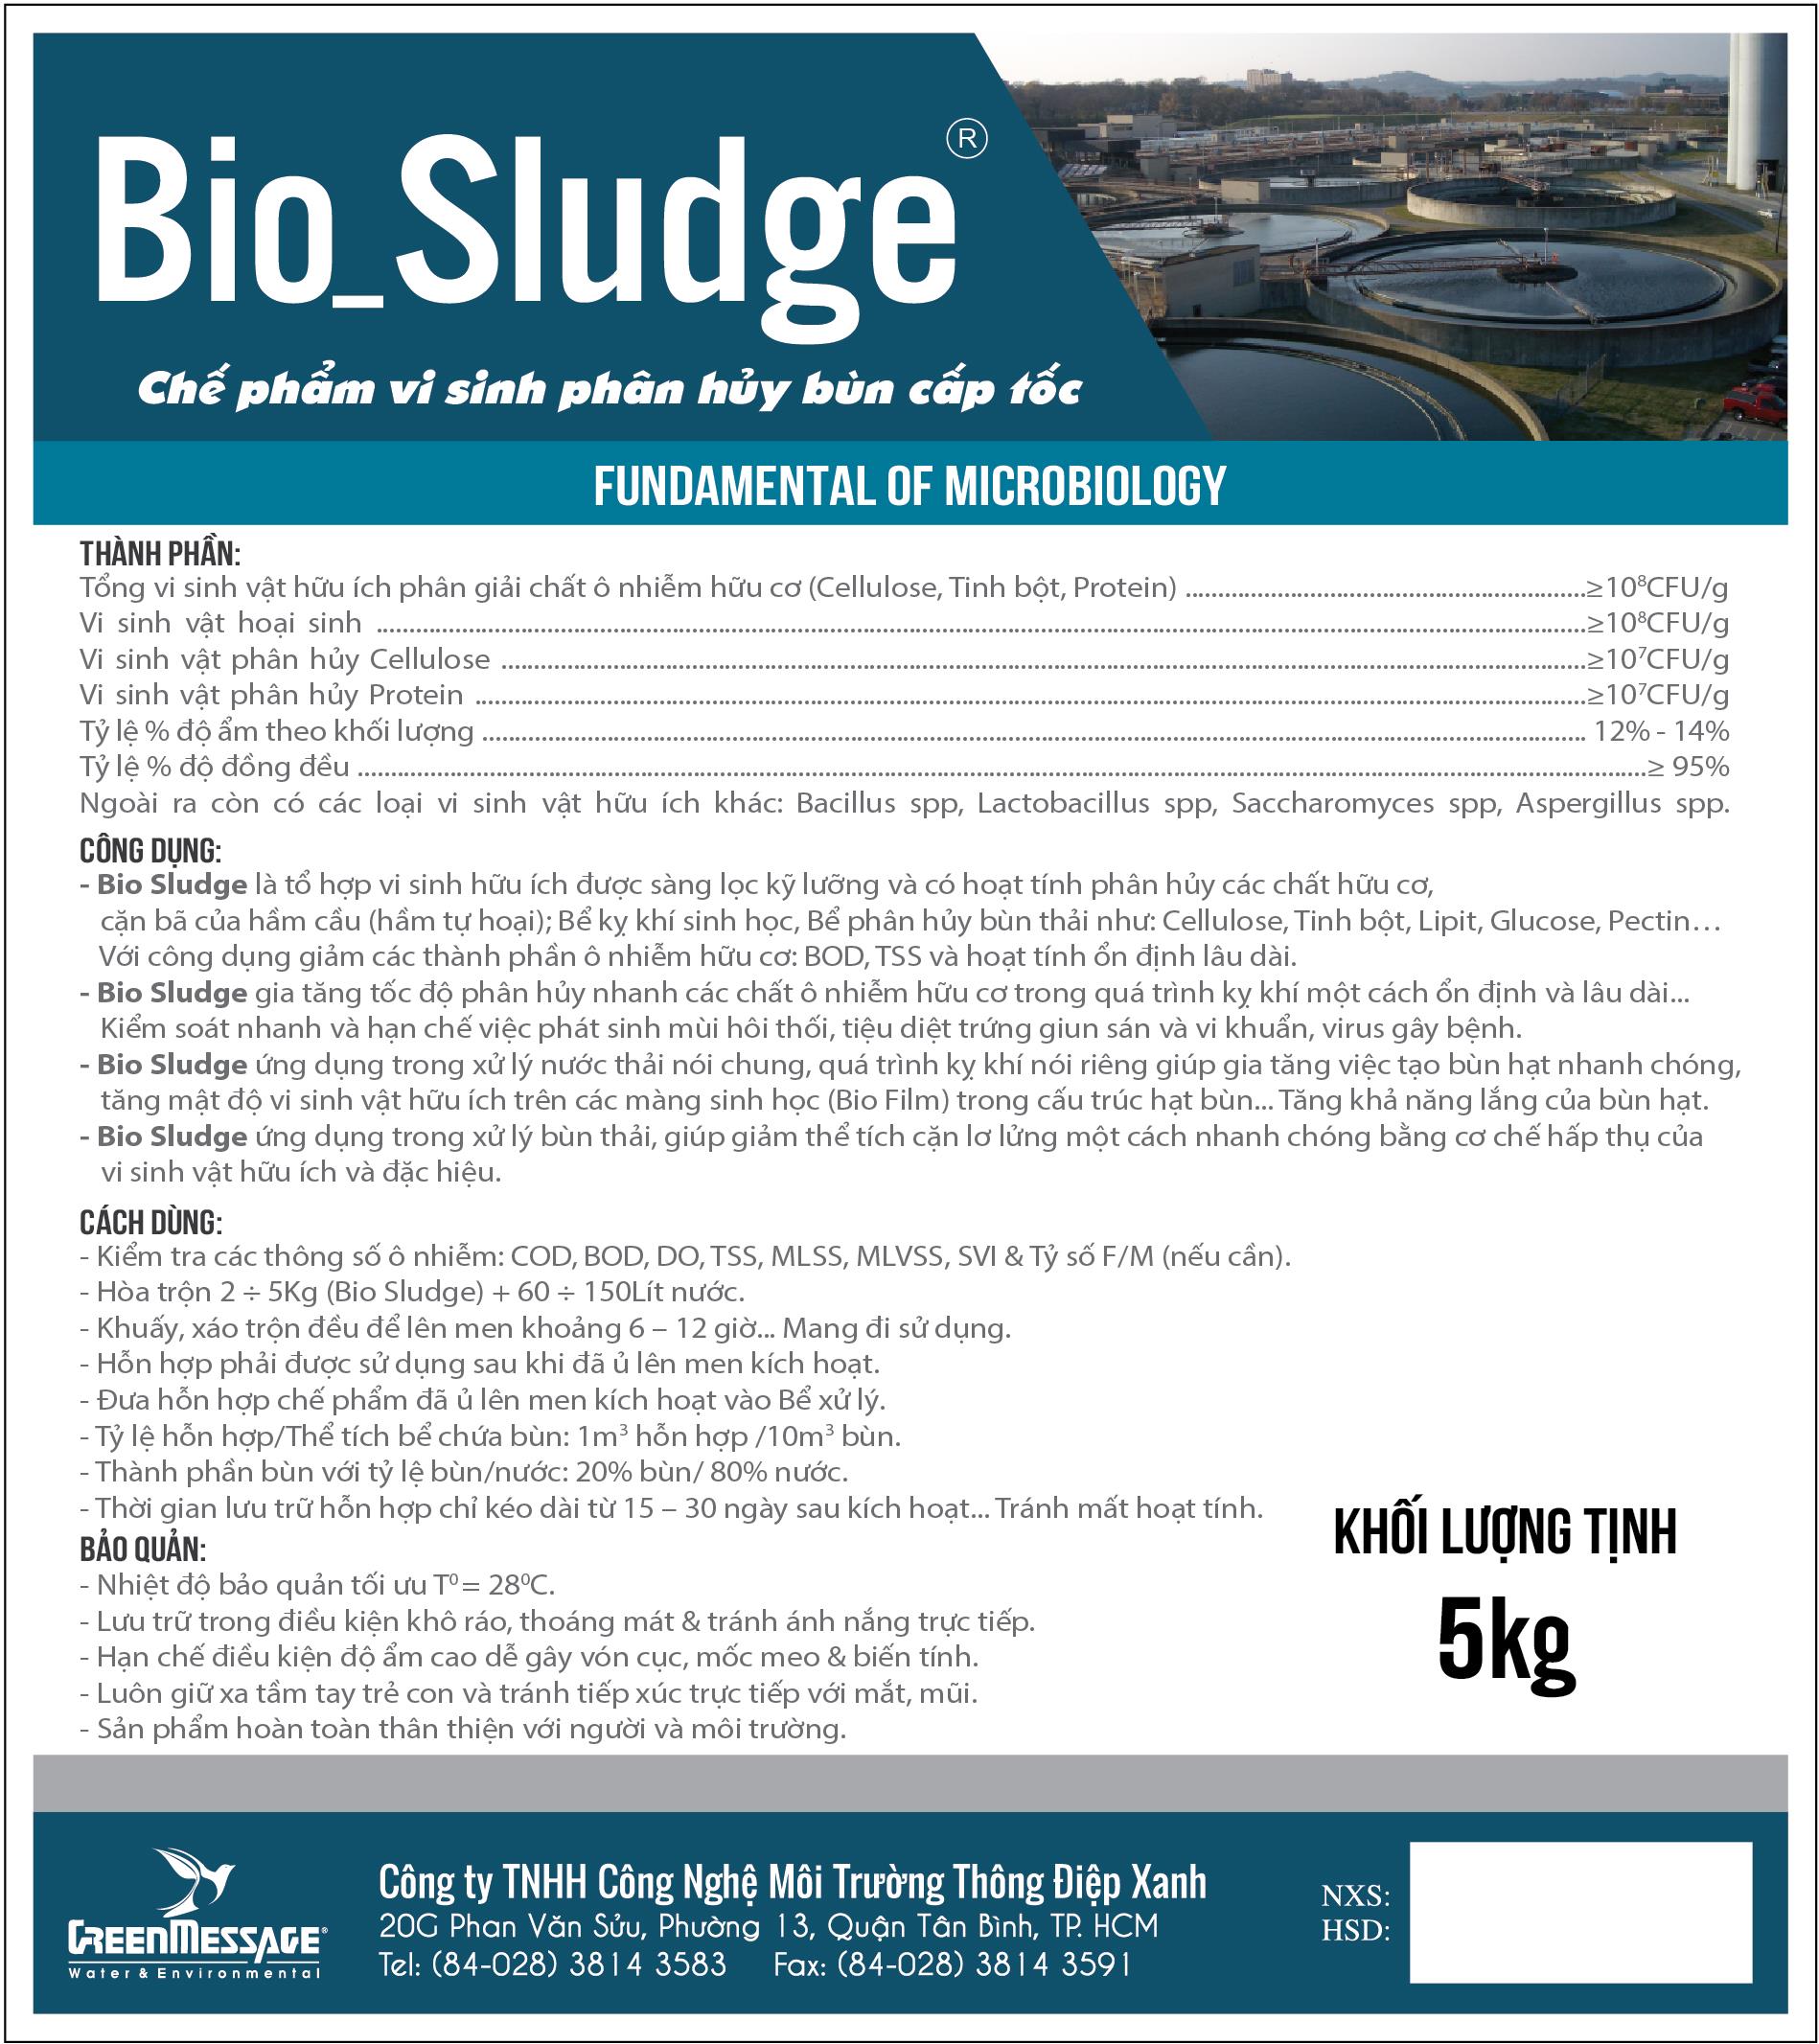 Bio_Sludge - Chế phẩm vi sinh phân hủy bùn cấp tốc